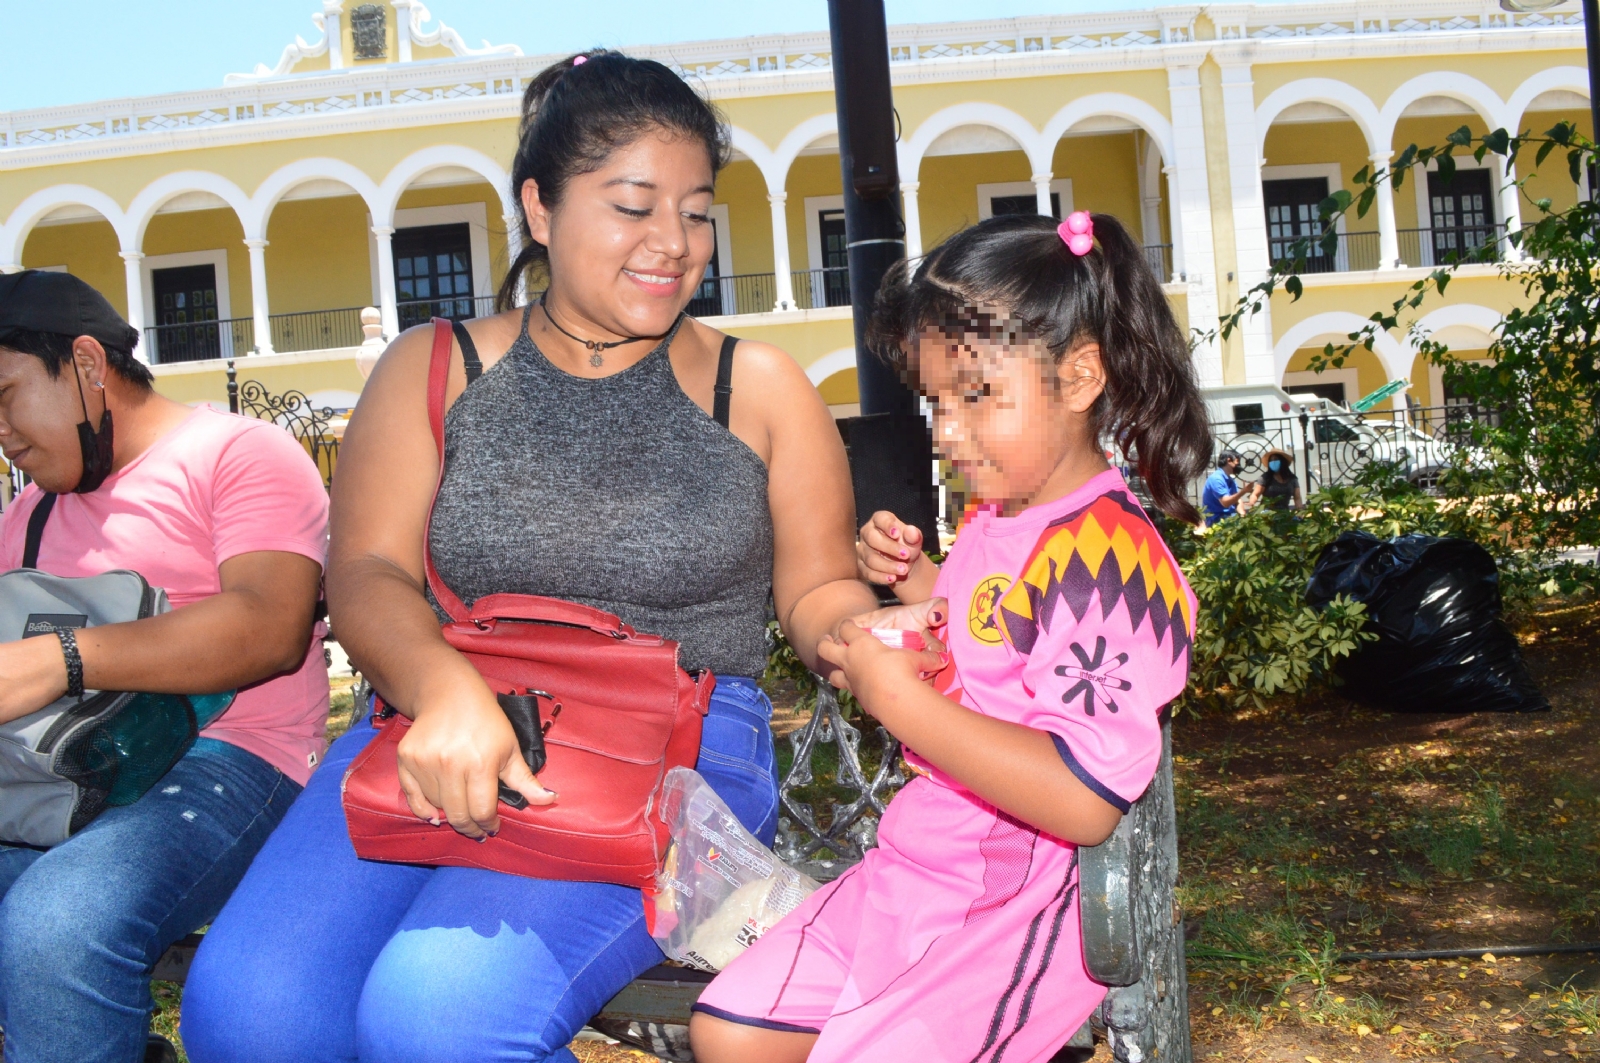 Empresas de Campeche 'discriminan' a madres solteras y personas enfermas: Injucam